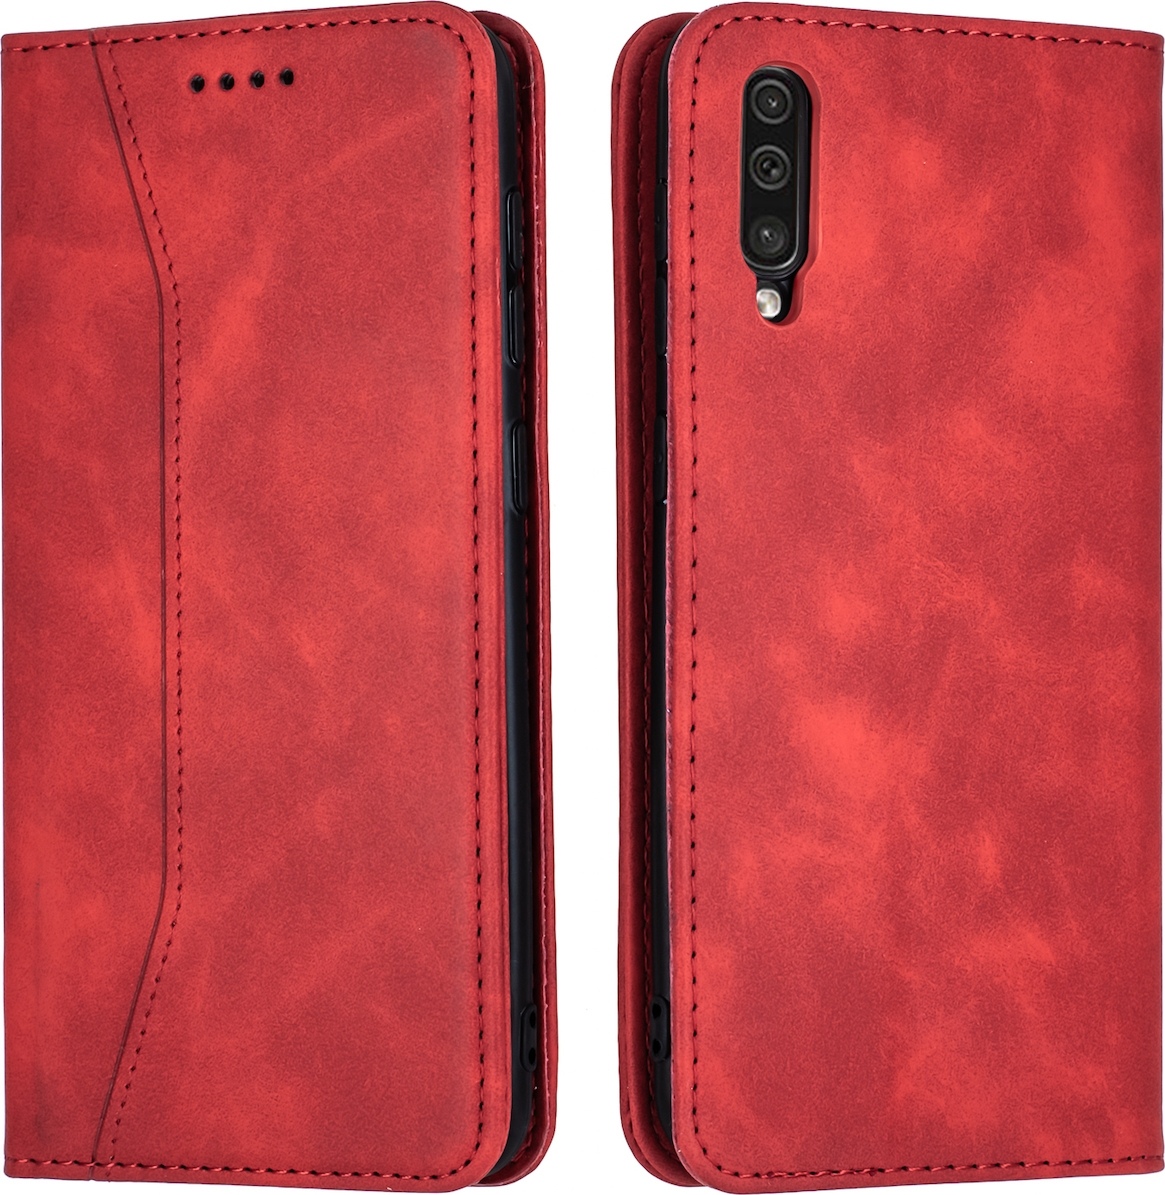 Bodycell Θήκη - Πορτοφόλι Samsung Galaxy A50 / A30s - Red (5206015058165) 82592